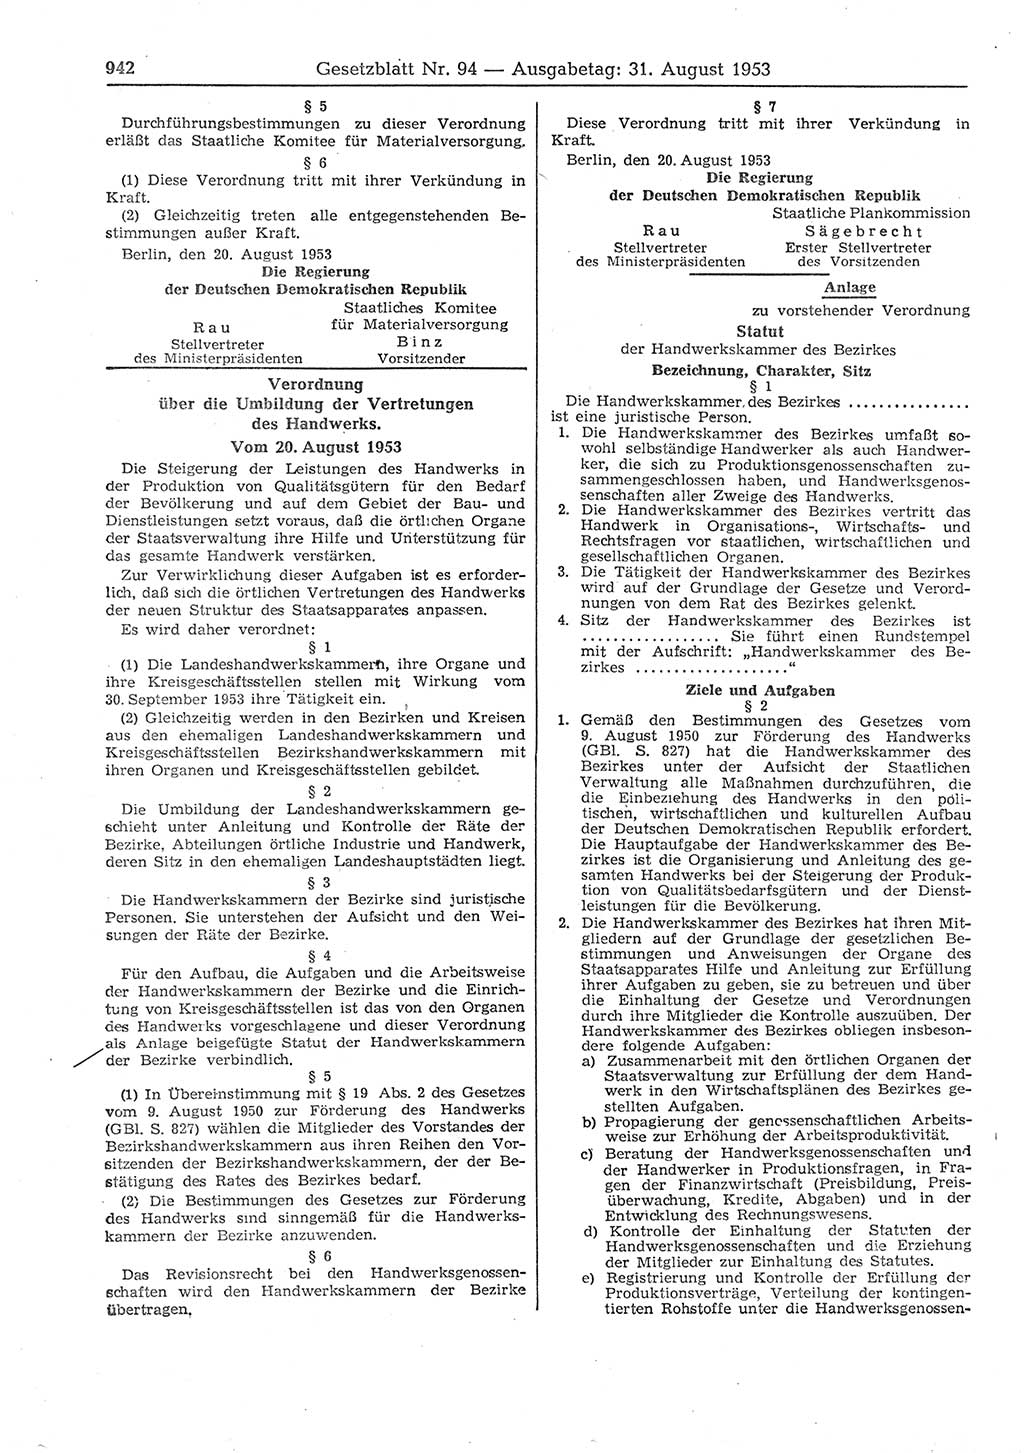 Gesetzblatt (GBl.) der Deutschen Demokratischen Republik (DDR) 1953, Seite 942 (GBl. DDR 1953, S. 942)